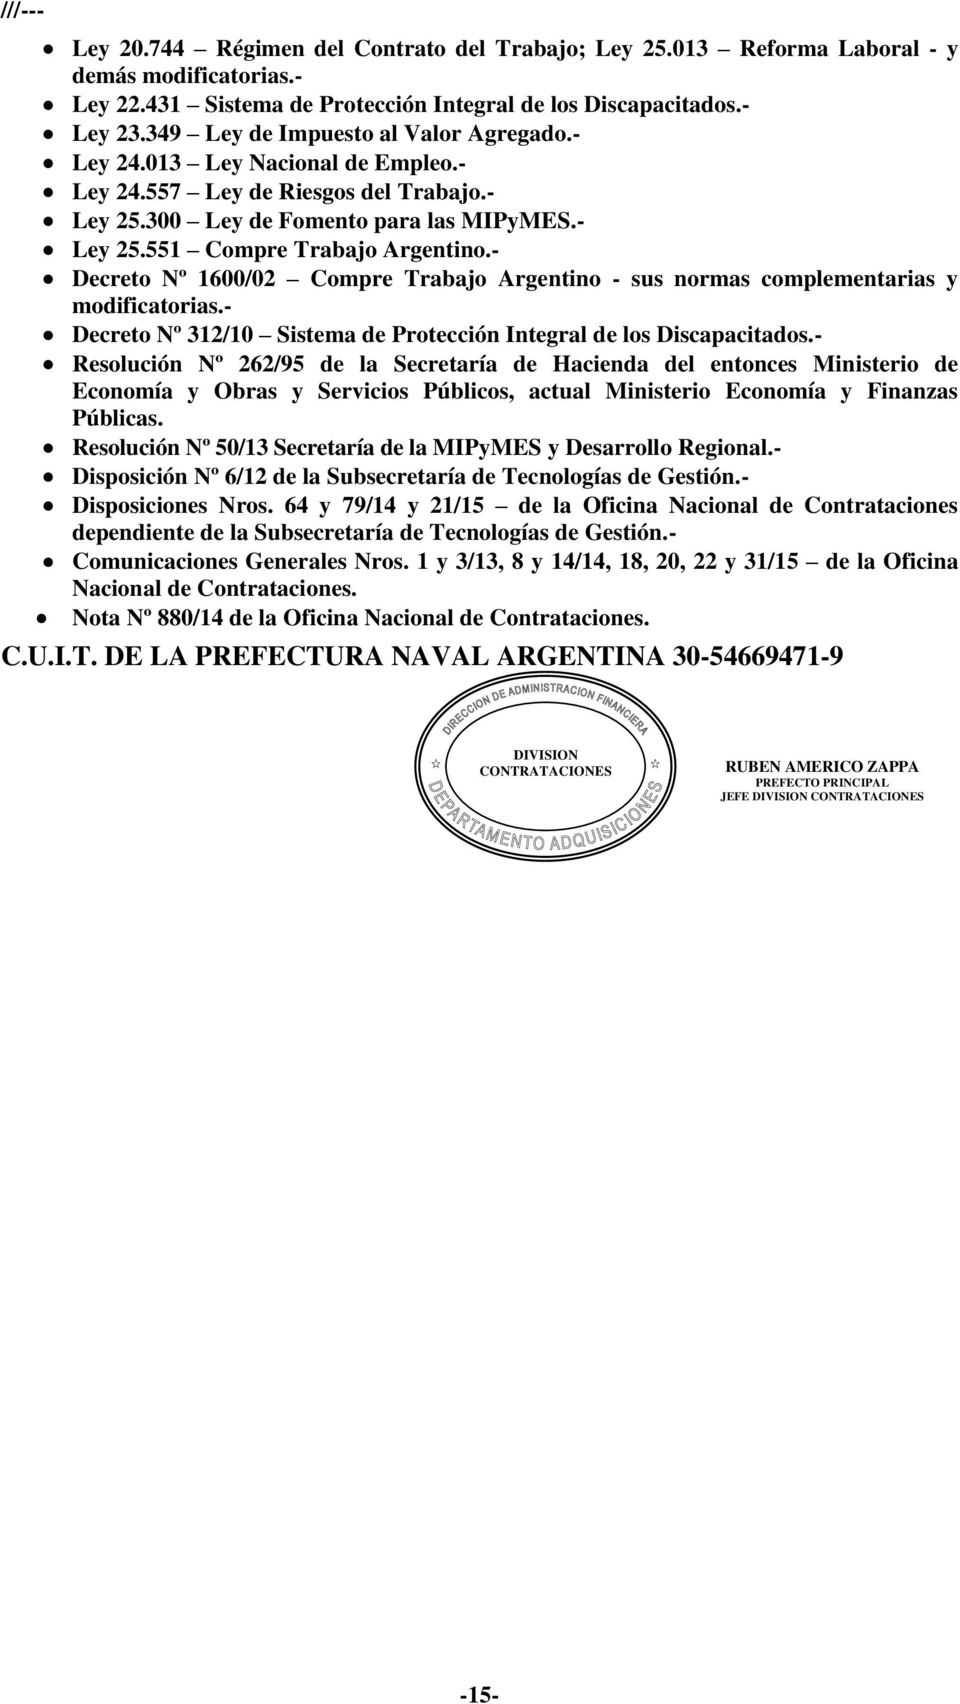 - Decreto Nº 1600/02 Compre Trabajo Argentino - sus normas complementarias y modificatorias.- Decreto Nº 312/10 Sistema de Protección Integral de los Discapacitados.